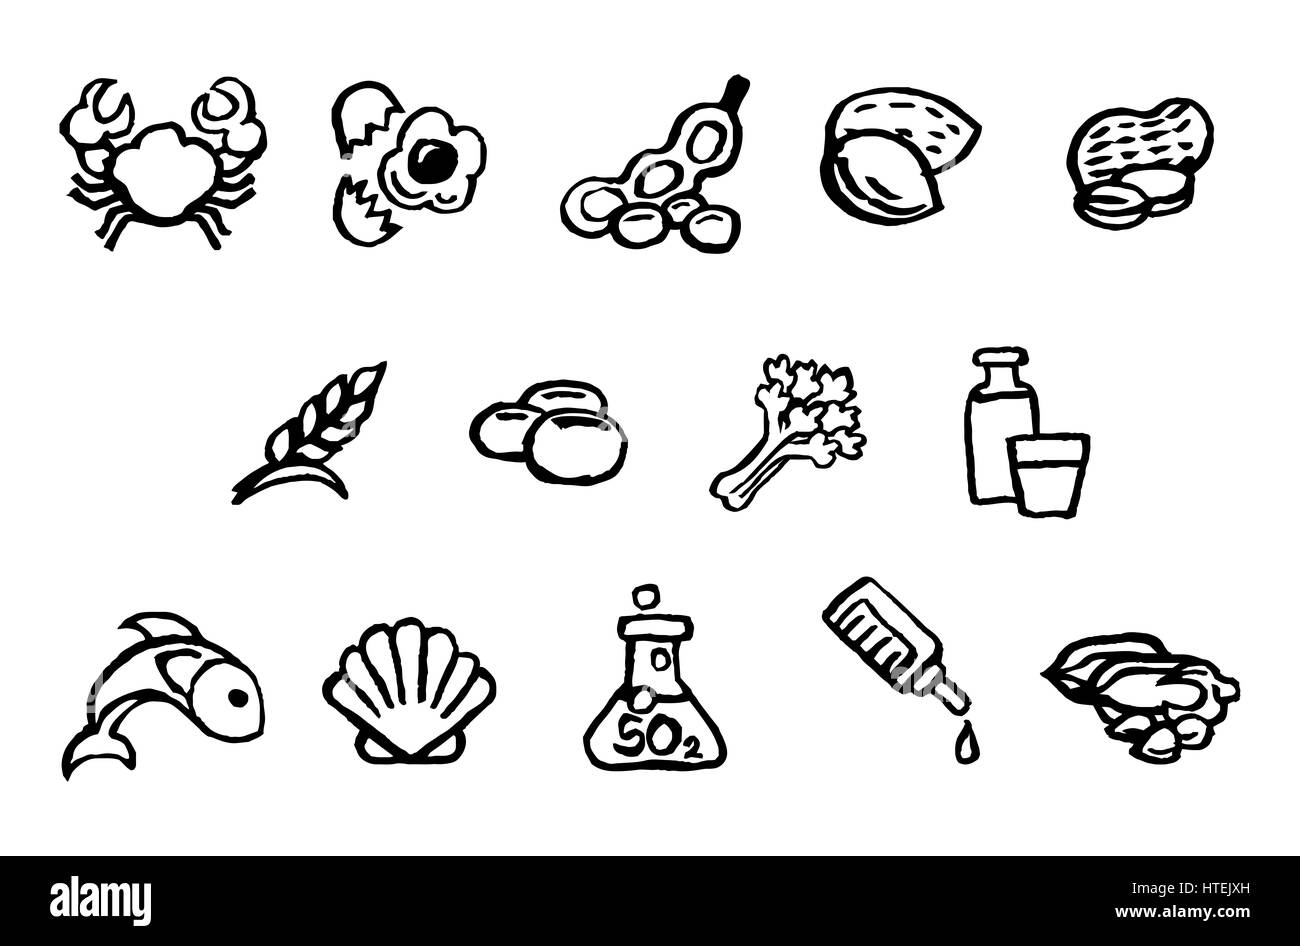 Conjunto de iconos de seguridad alimentaria alergias alergias incluyendo 14 esbozadas por la UE para los consumidores de información alimentaria Reglamento EFSA Autoridad Europea de Seguridad Alimentaria. Foto de stock